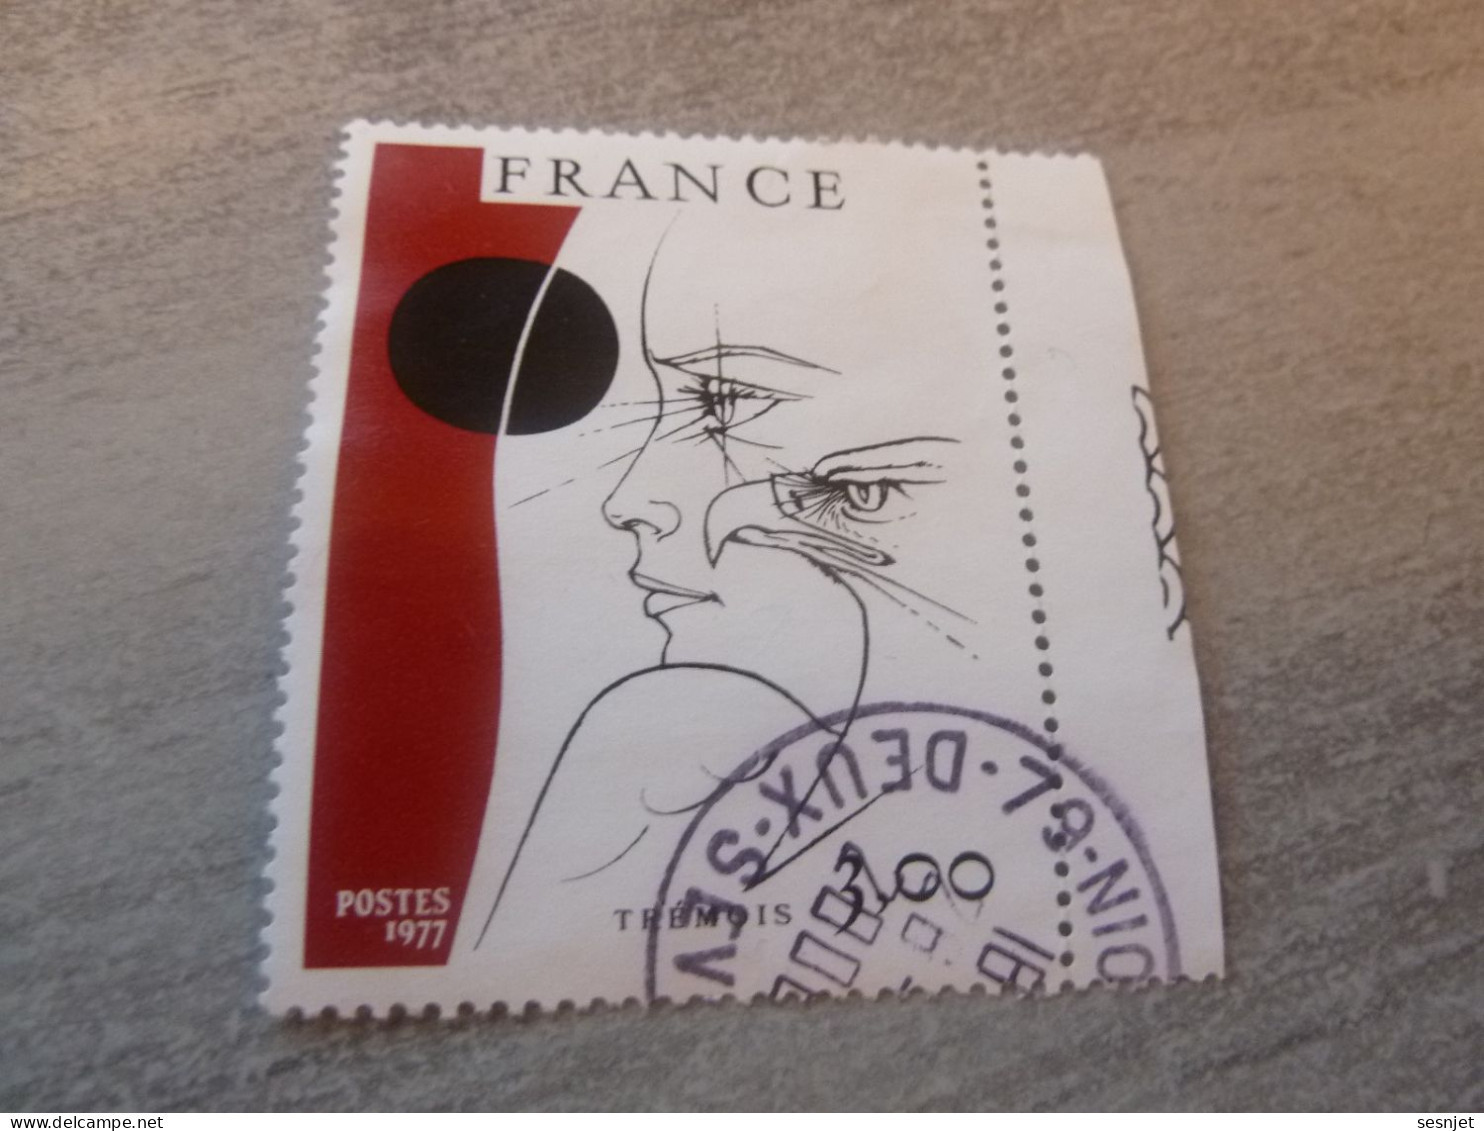 Pierre-Yves Trémois (1921-2020) - 3f. - Yt 1950 - Noir Et Rouge-brun - Oblitéré - Année 1977 - - Used Stamps